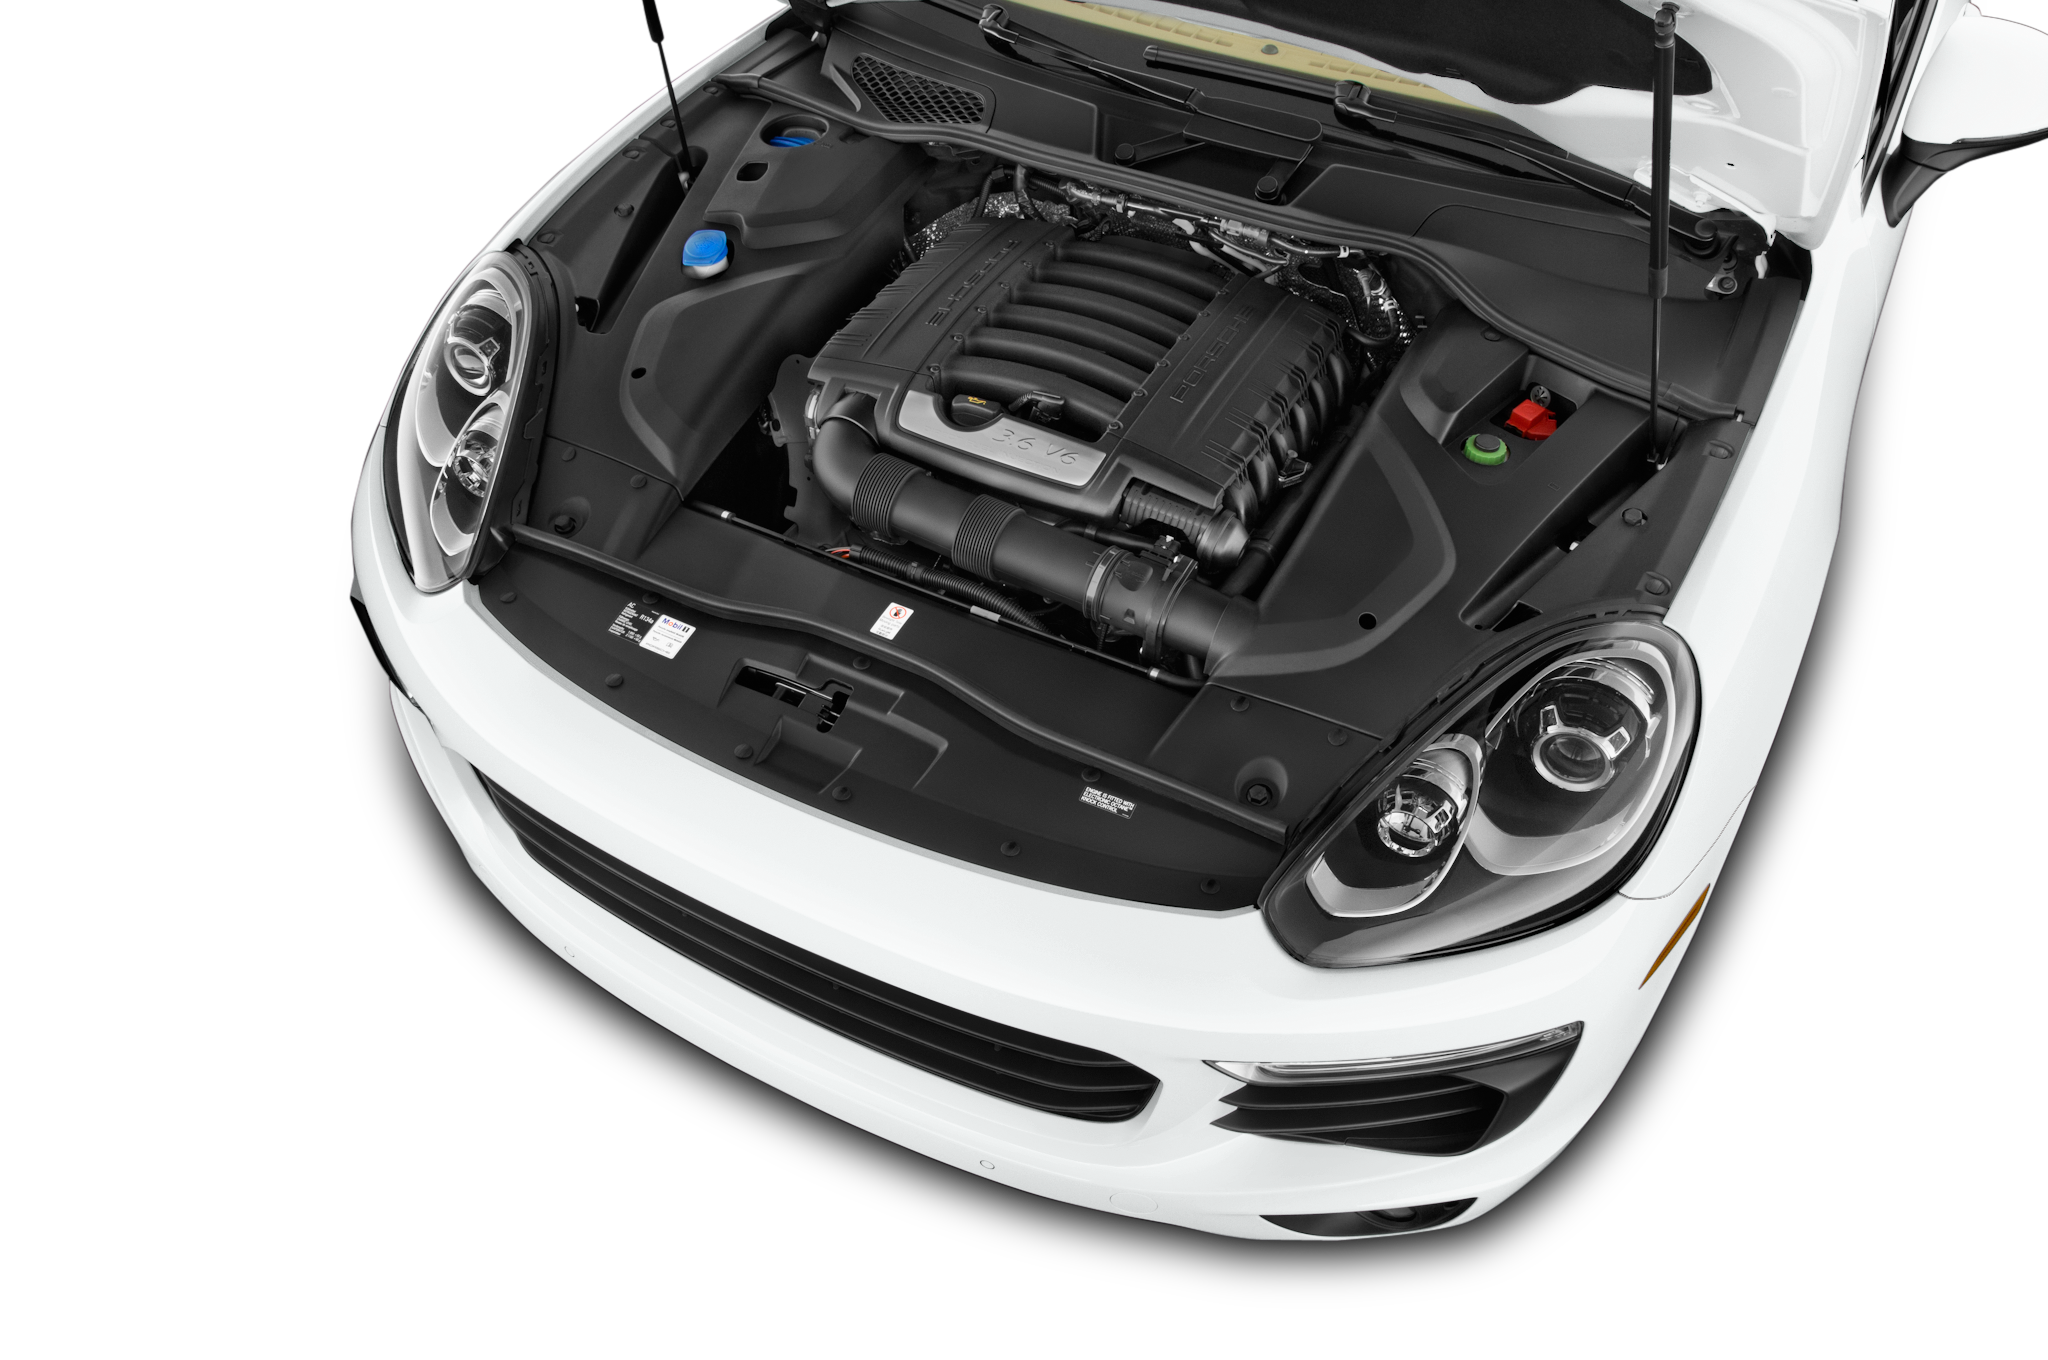 Порше Кайен 2018 двигатель. Порше Кайен открытый капот. Porsche Cayman капот мотор. Порш Каен 2015 открытый капот. Машина с открытым капотом